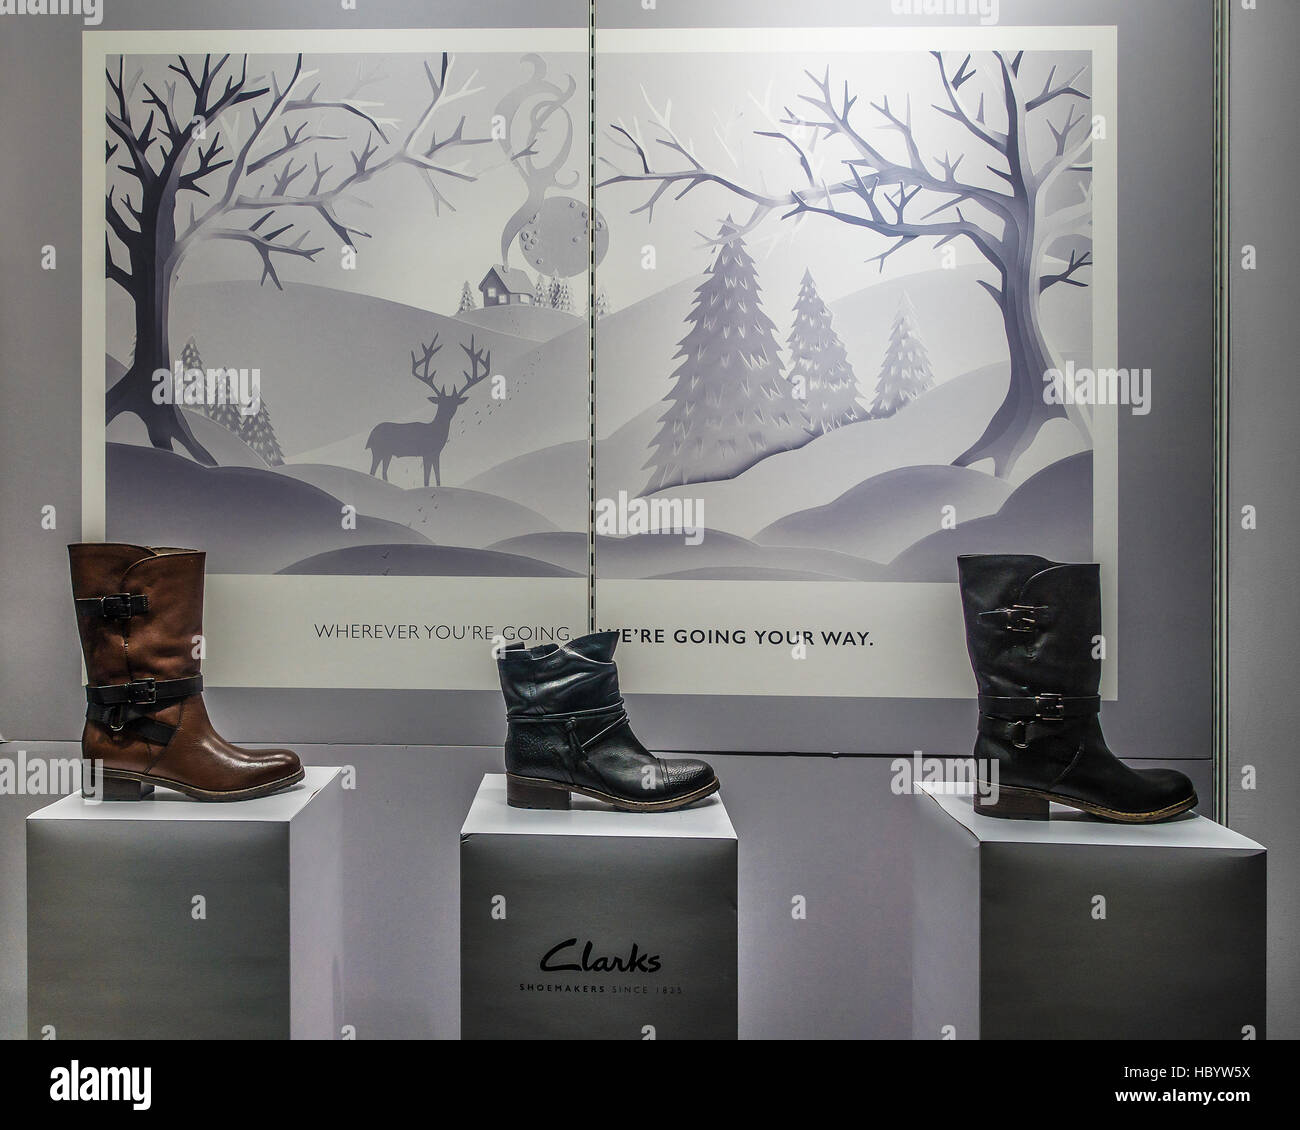 Clarks shoe shop immagini e fotografie stock ad alta risoluzione - Alamy